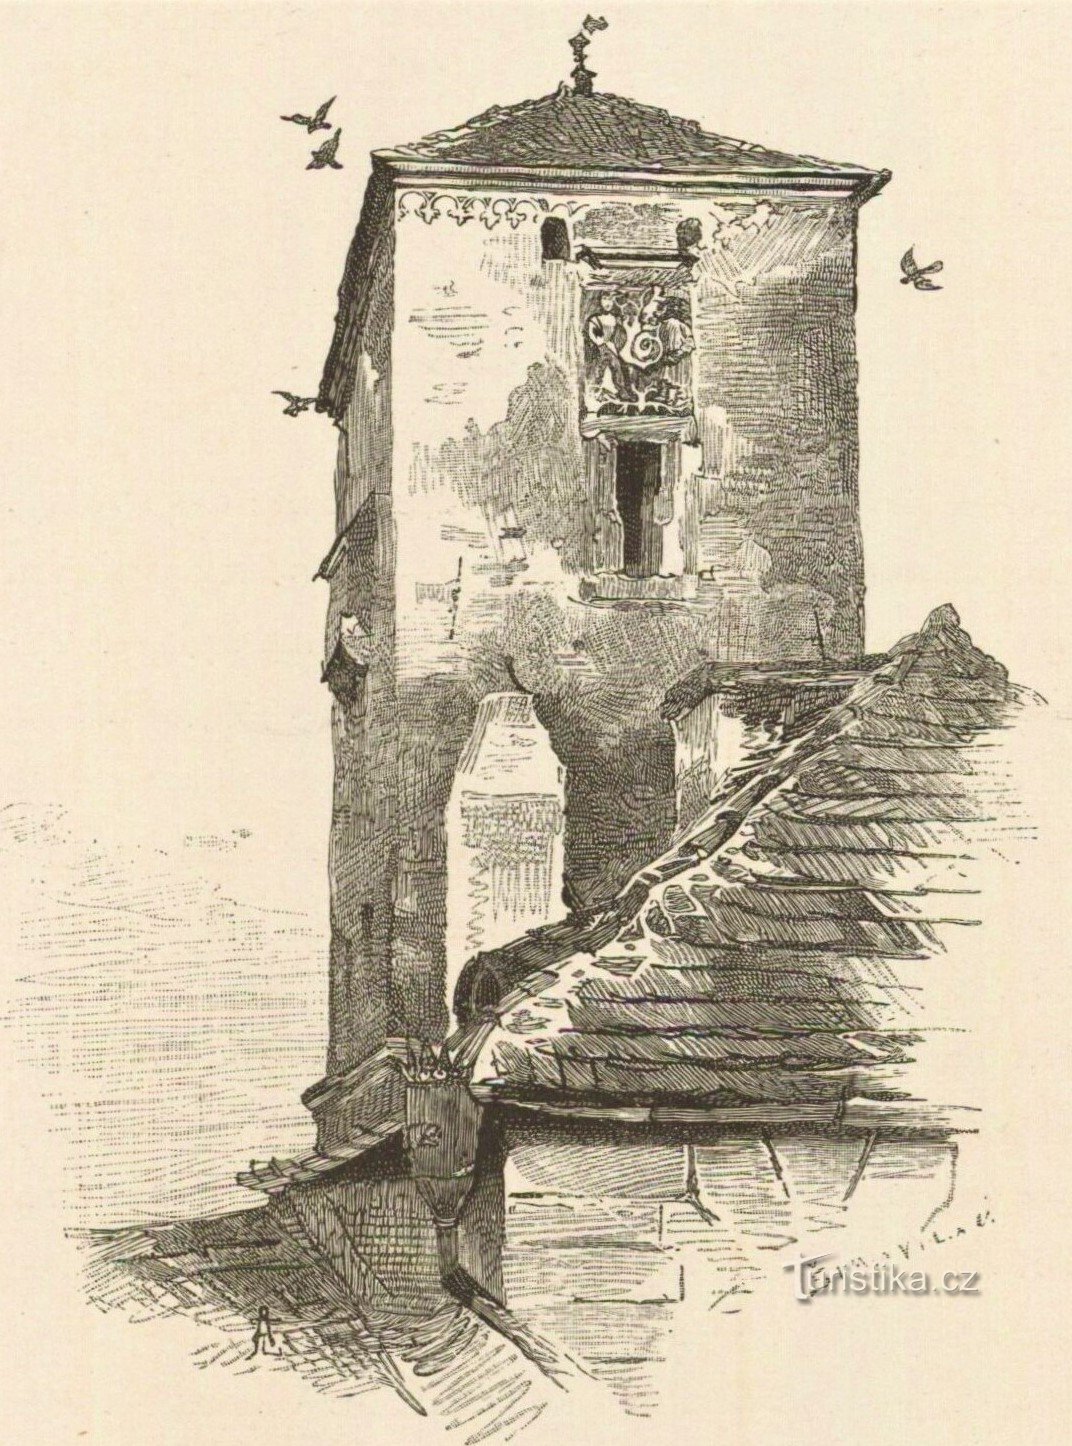 Tháp Kropáčka trên một bản vẽ từ cuối thế kỷ 19